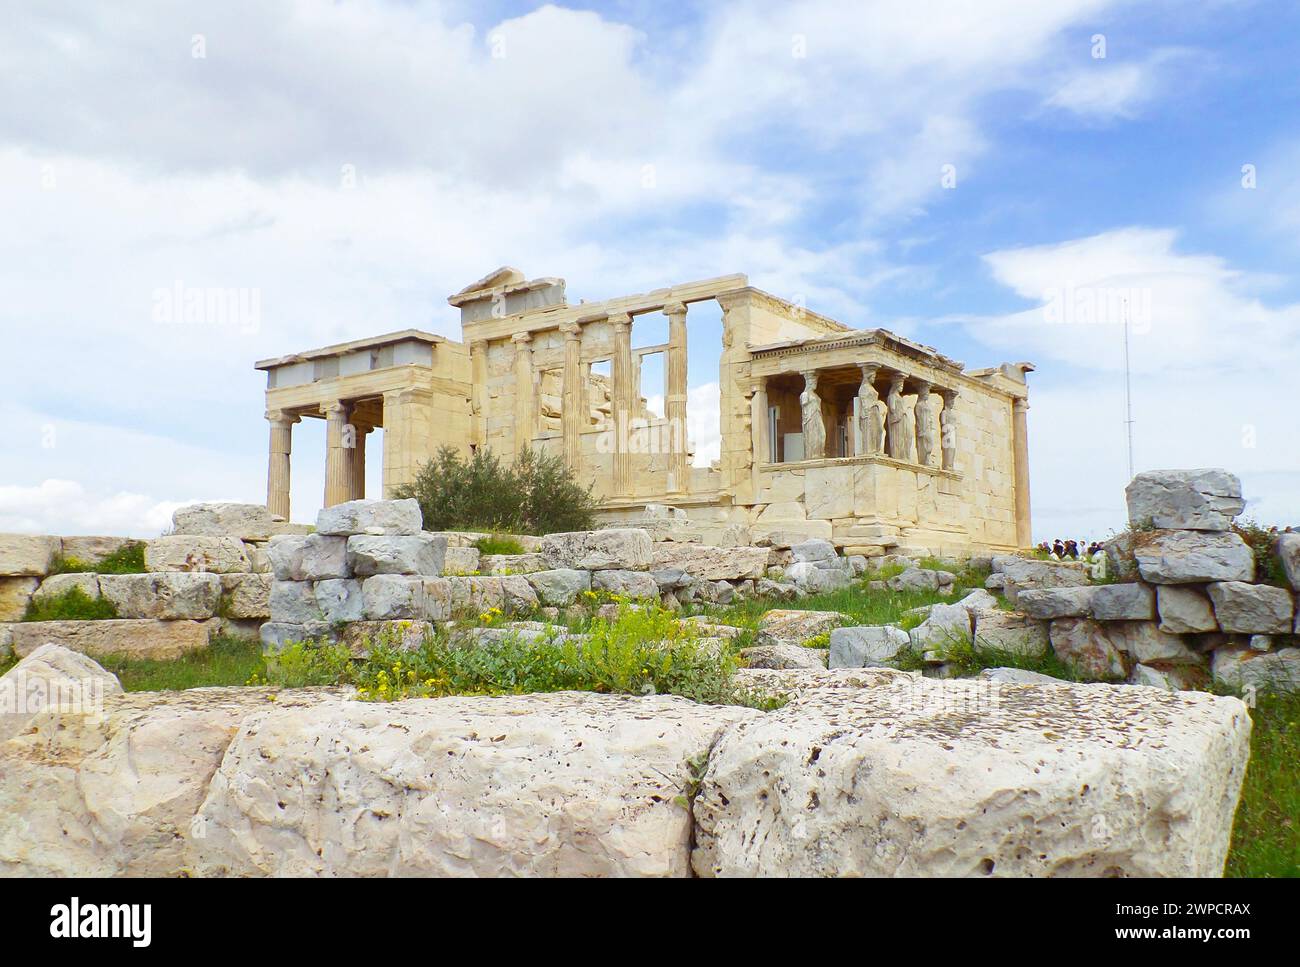 Das Erechtheum oder das Erechtheion mit der Caryatiden-Veranda, einem antiken Ionischen Tempel auf der Akropolis von Athen, Griechenland Stockfoto